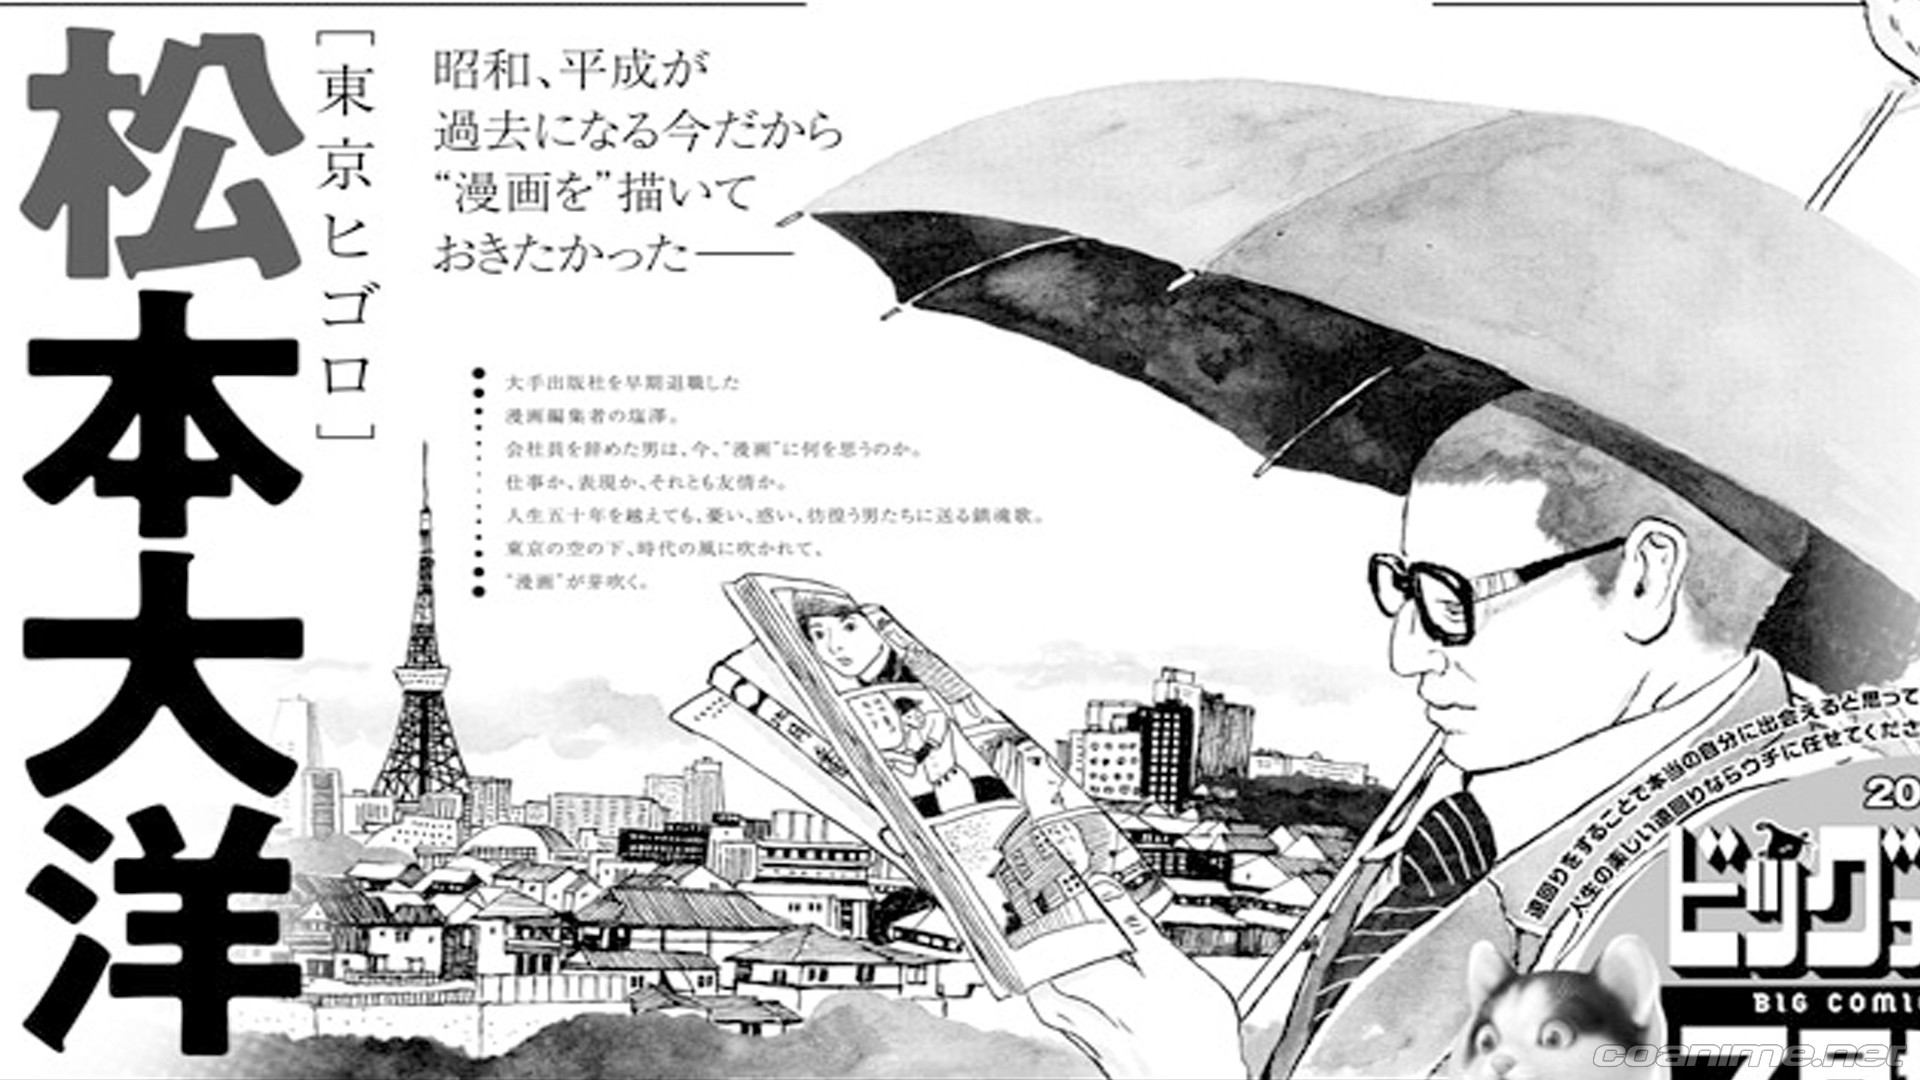 En junio se lanzará un nuevo manga de Taiyo Matsumoto